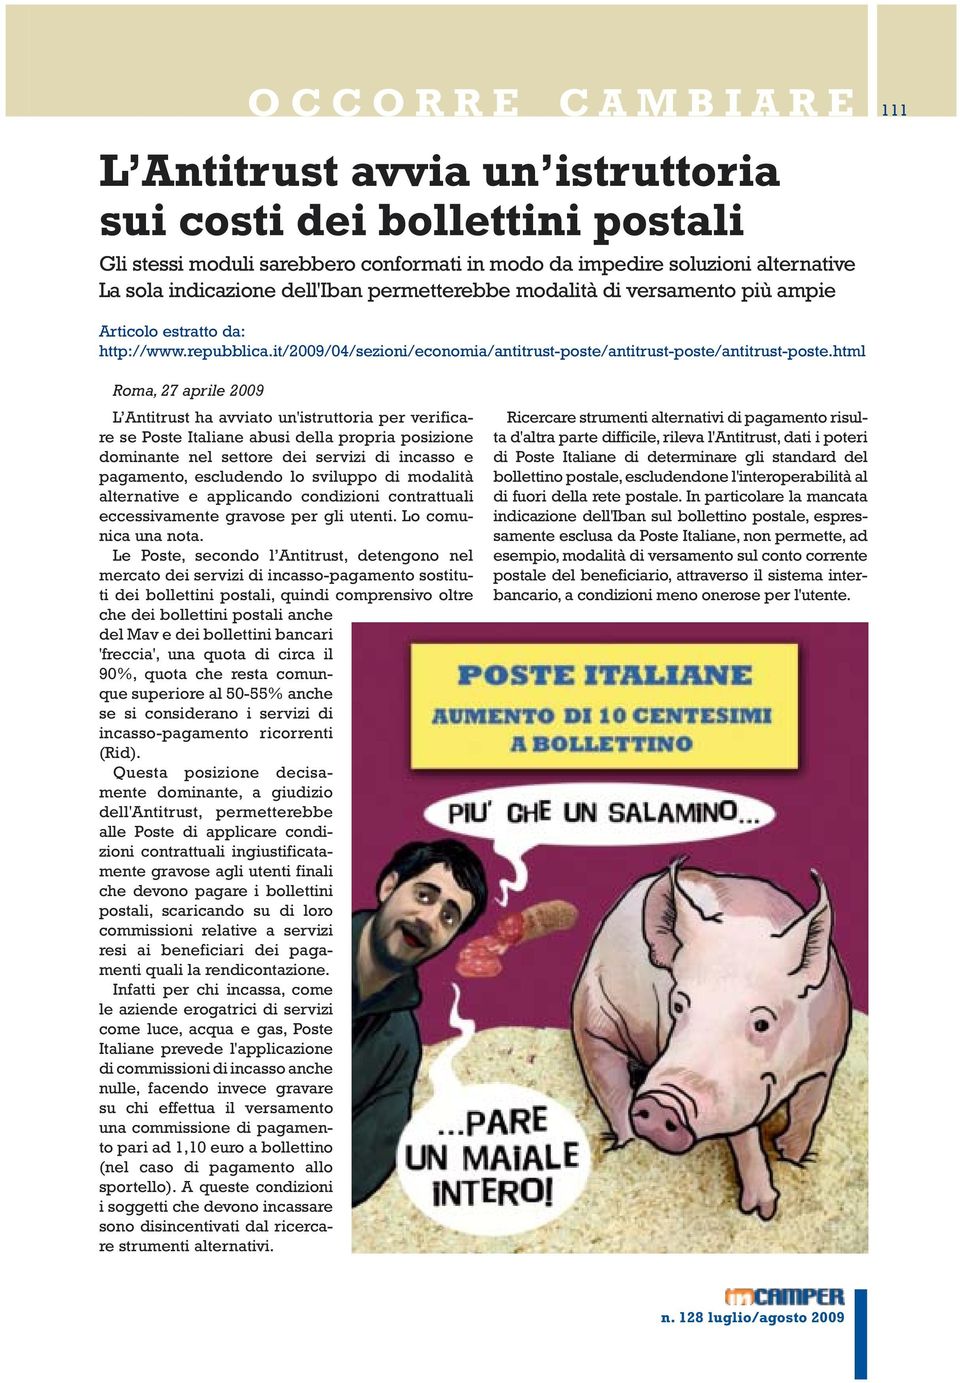 html Roma, 27 aprile 2009 L Antitrust ha avviato un'istruttoria per verificare se Poste Italiane abusi della propria posizione dominante nel settore dei servizi di incasso e pagamento, escludendo lo